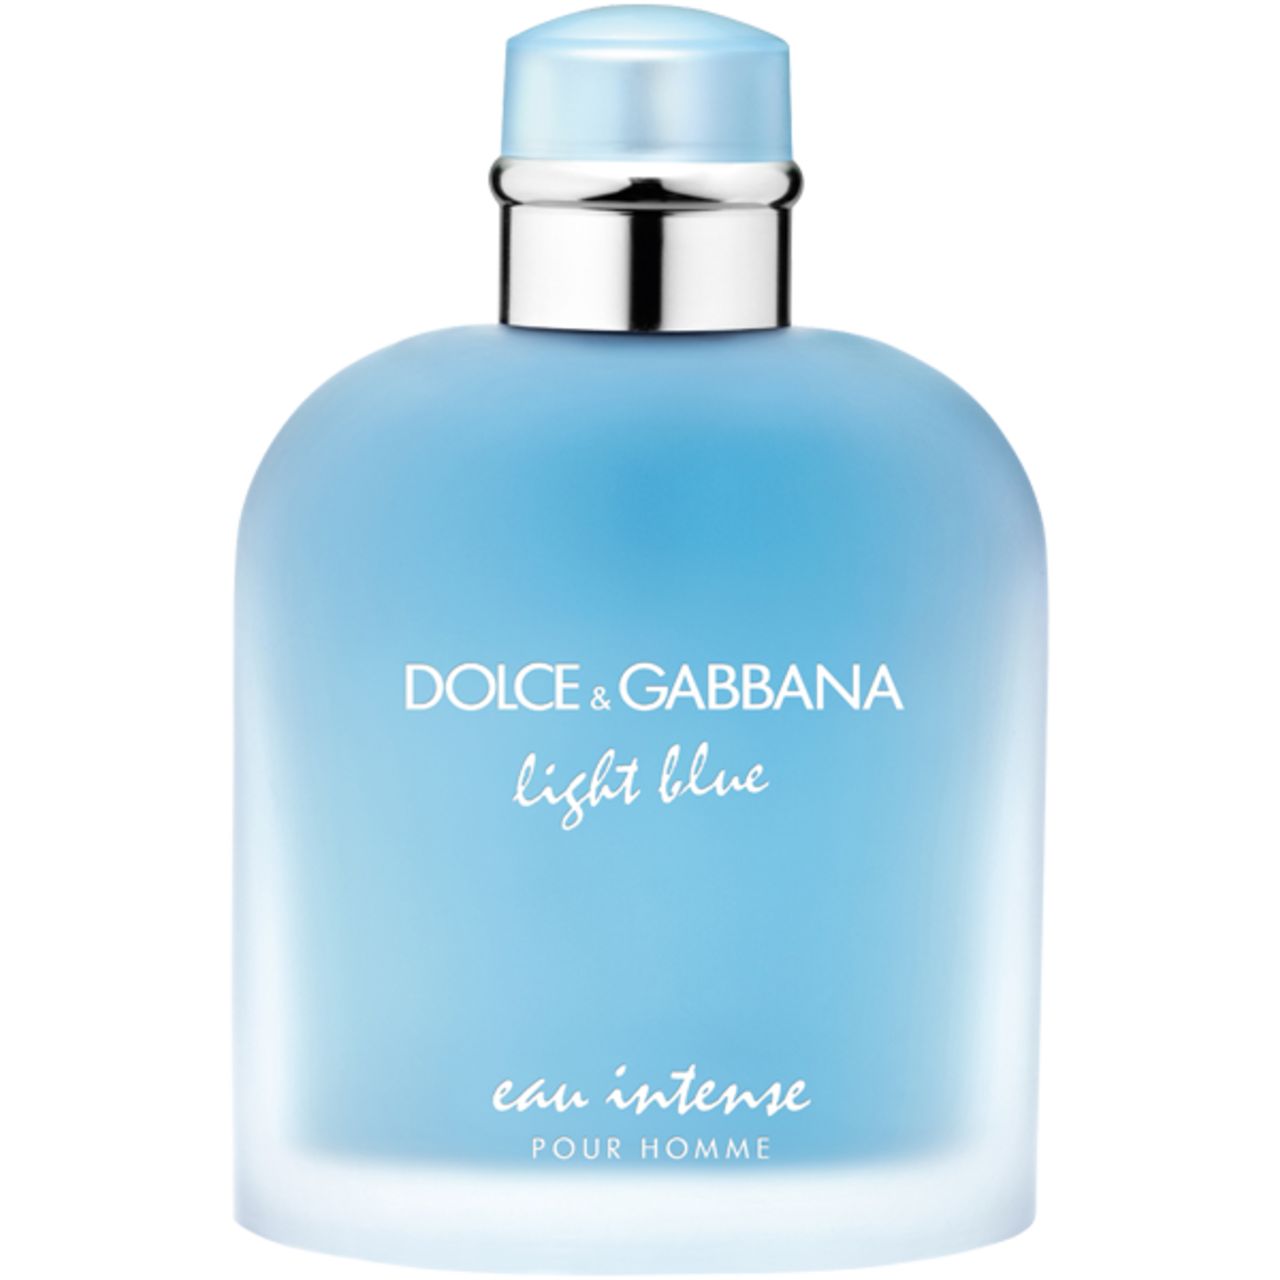 Dolce & Gabbana, Light Blue Pour Homme Eau Intense E.d.P. Nat. Spray